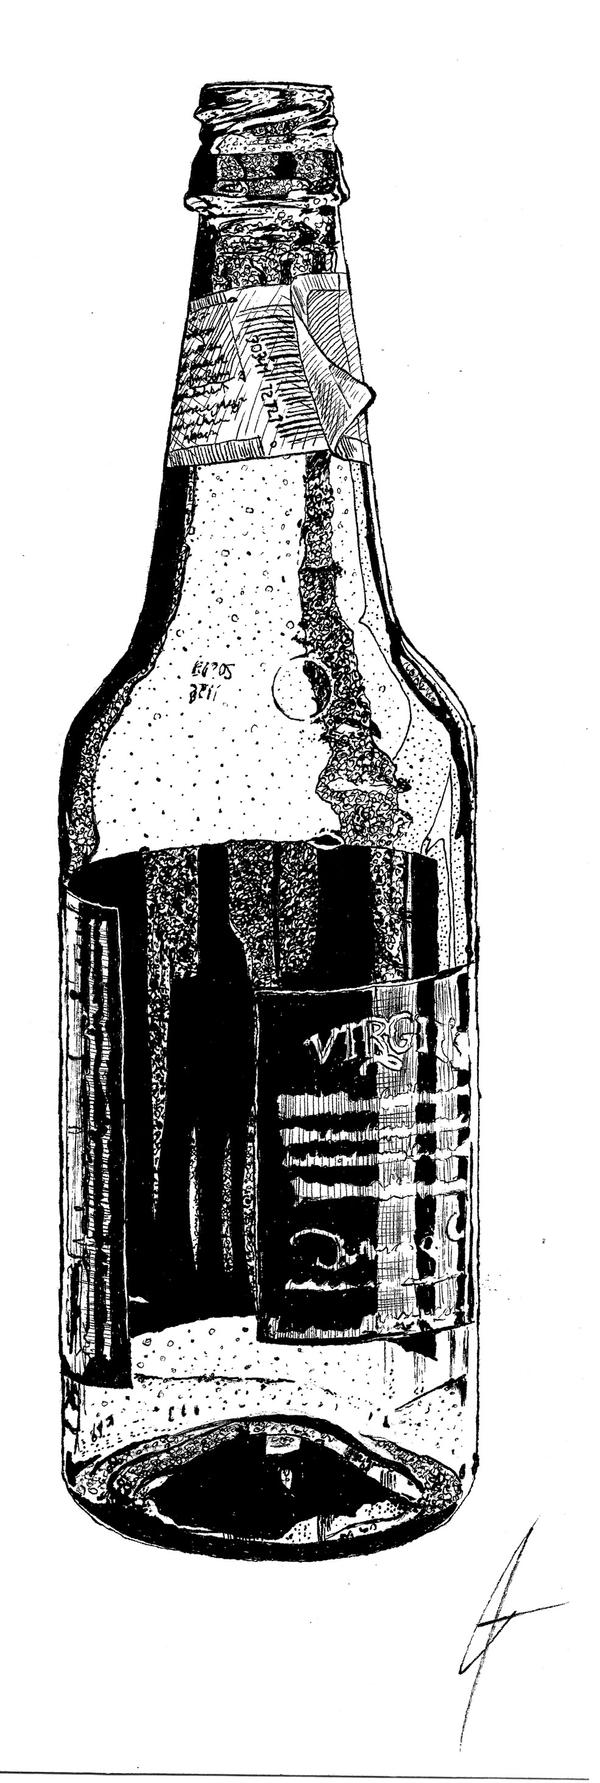 Root Beer Bottle Sketch by JoeMan on DeviantArt